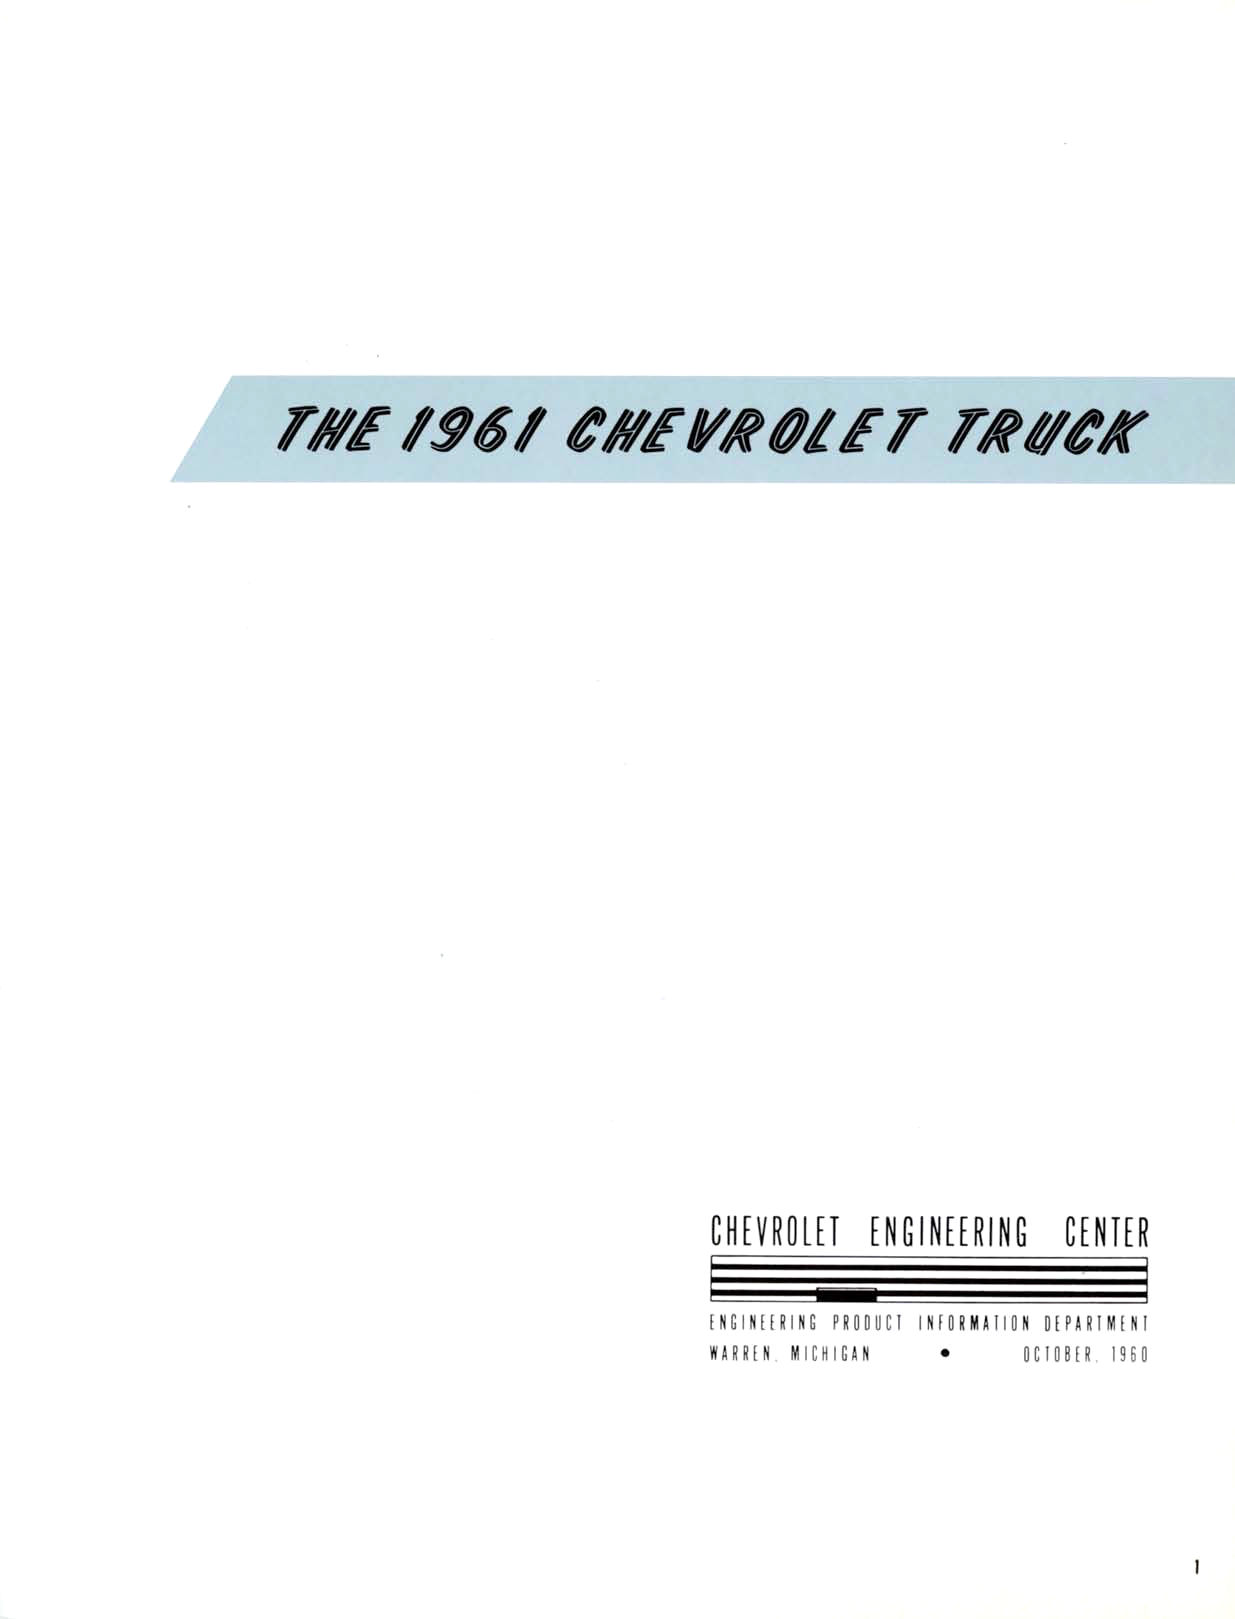 1961 Chevrolet Truck Engineering Features-02